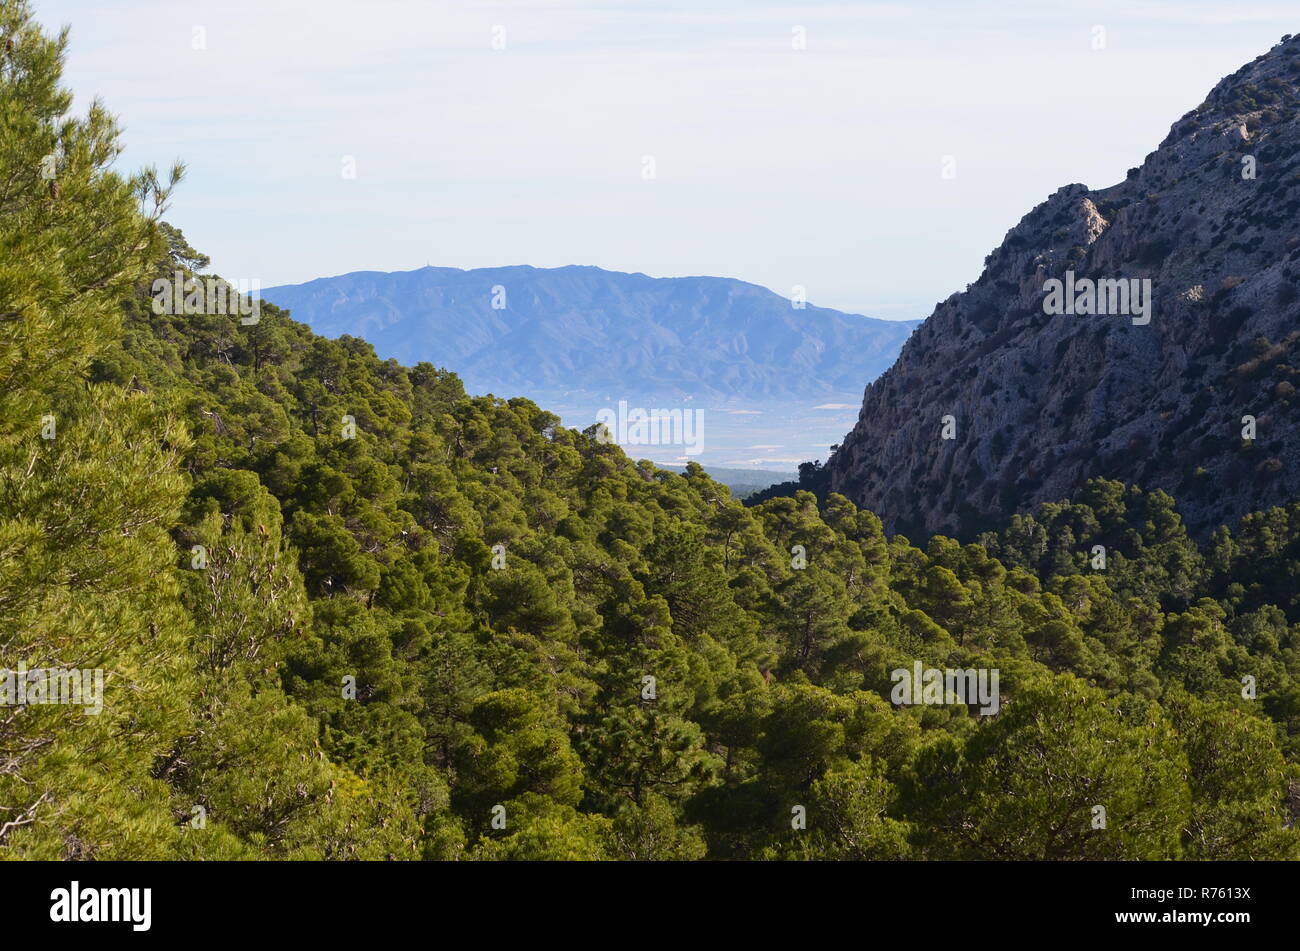 Aleppo e foreste di pini in Sierra Espuña massiccio, con la Sierra de Carrascoy in background, Murcia (Spagna sud-orientale) Foto Stock